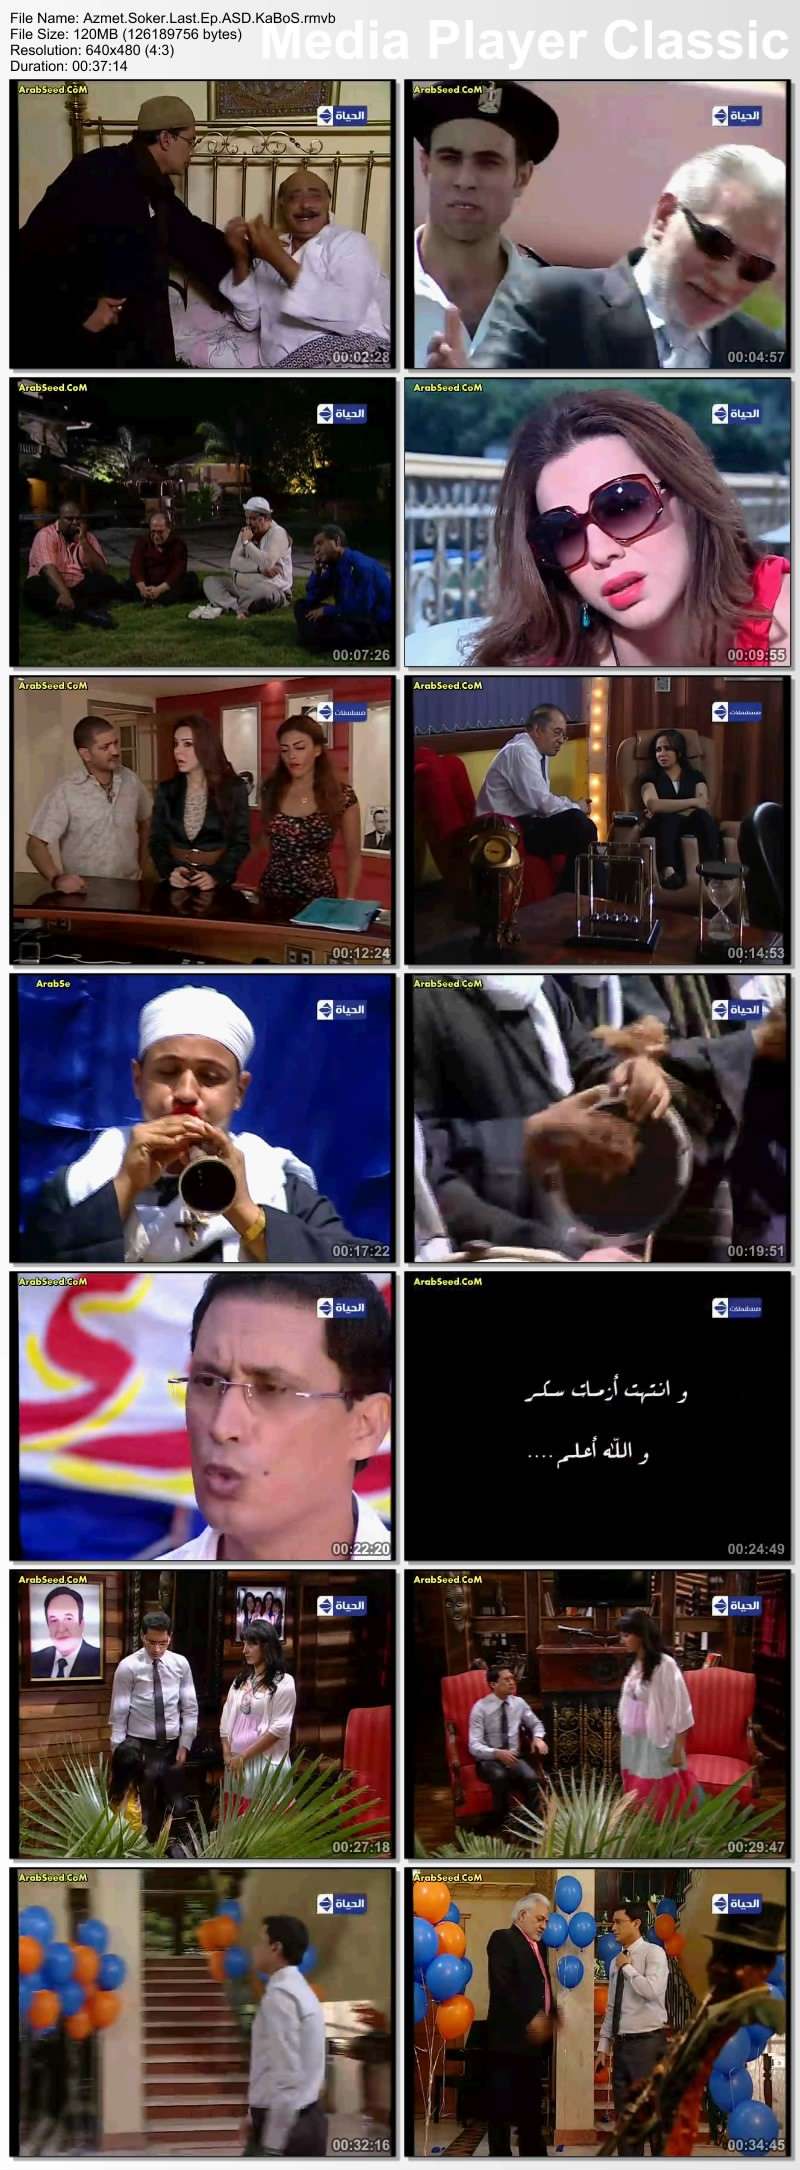 النجم احمد عيد في المسلسل الكوميدي " ازمة سكر " Thumbs34